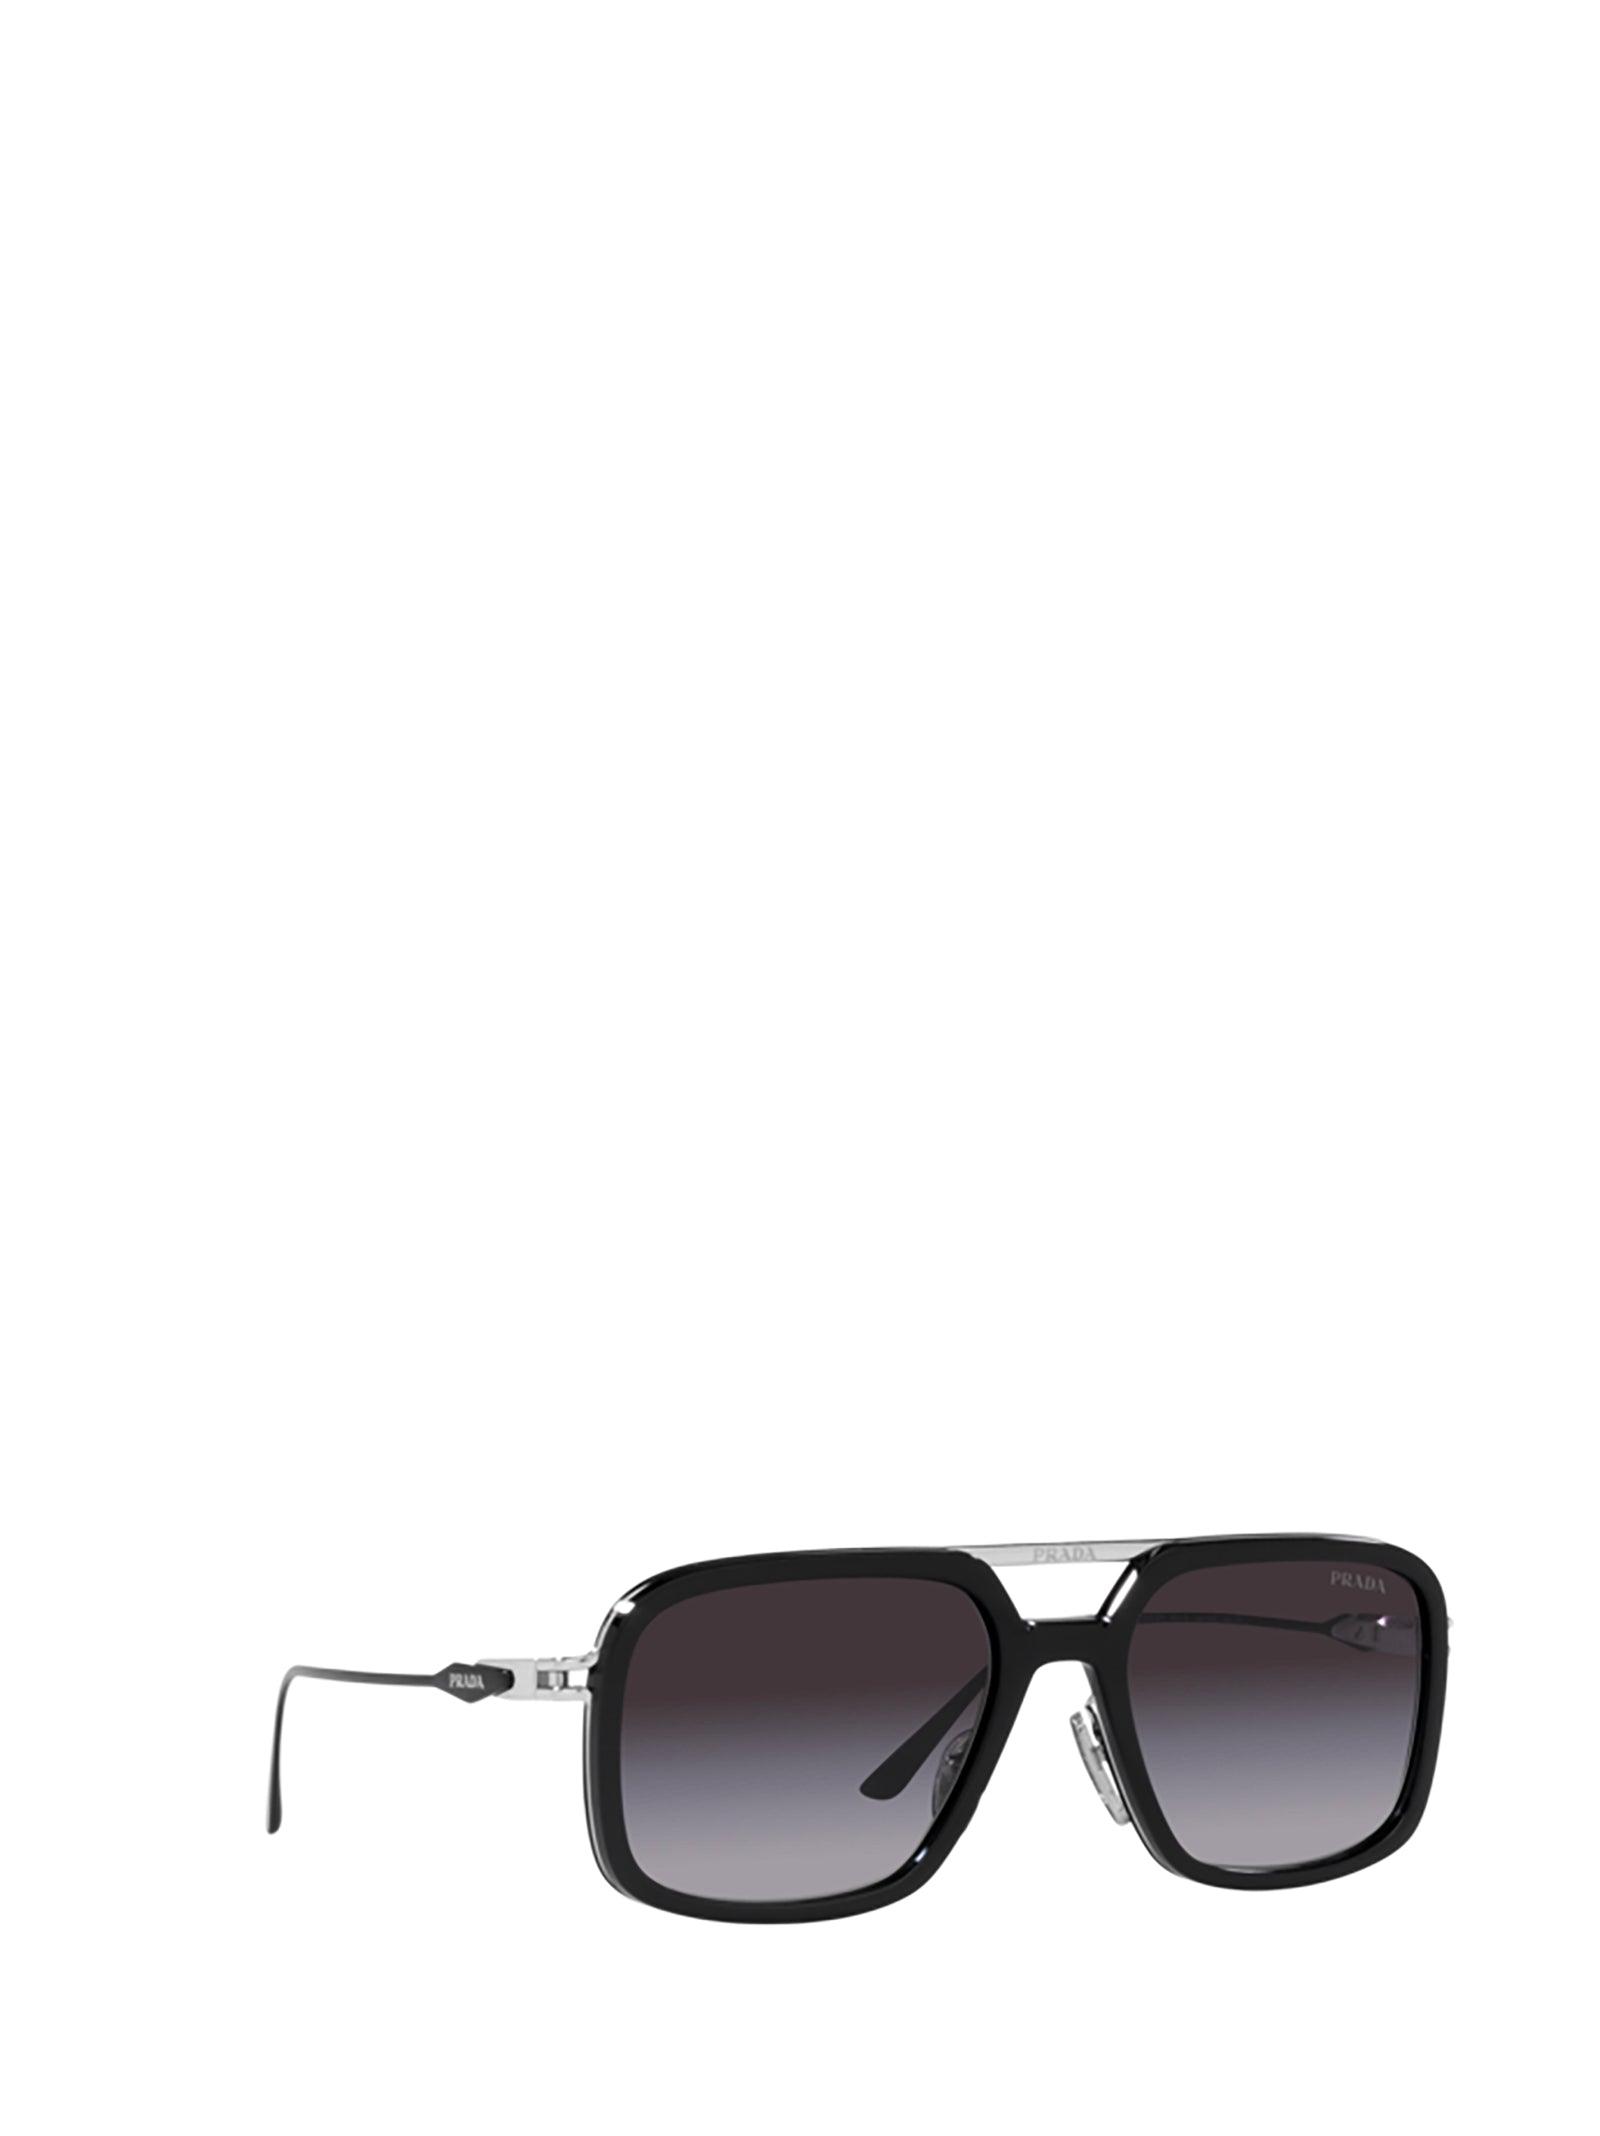 Prada Linea Rossa PS 54IS Sunglasses Men's Rectangle Shape | EyeSpecs.com